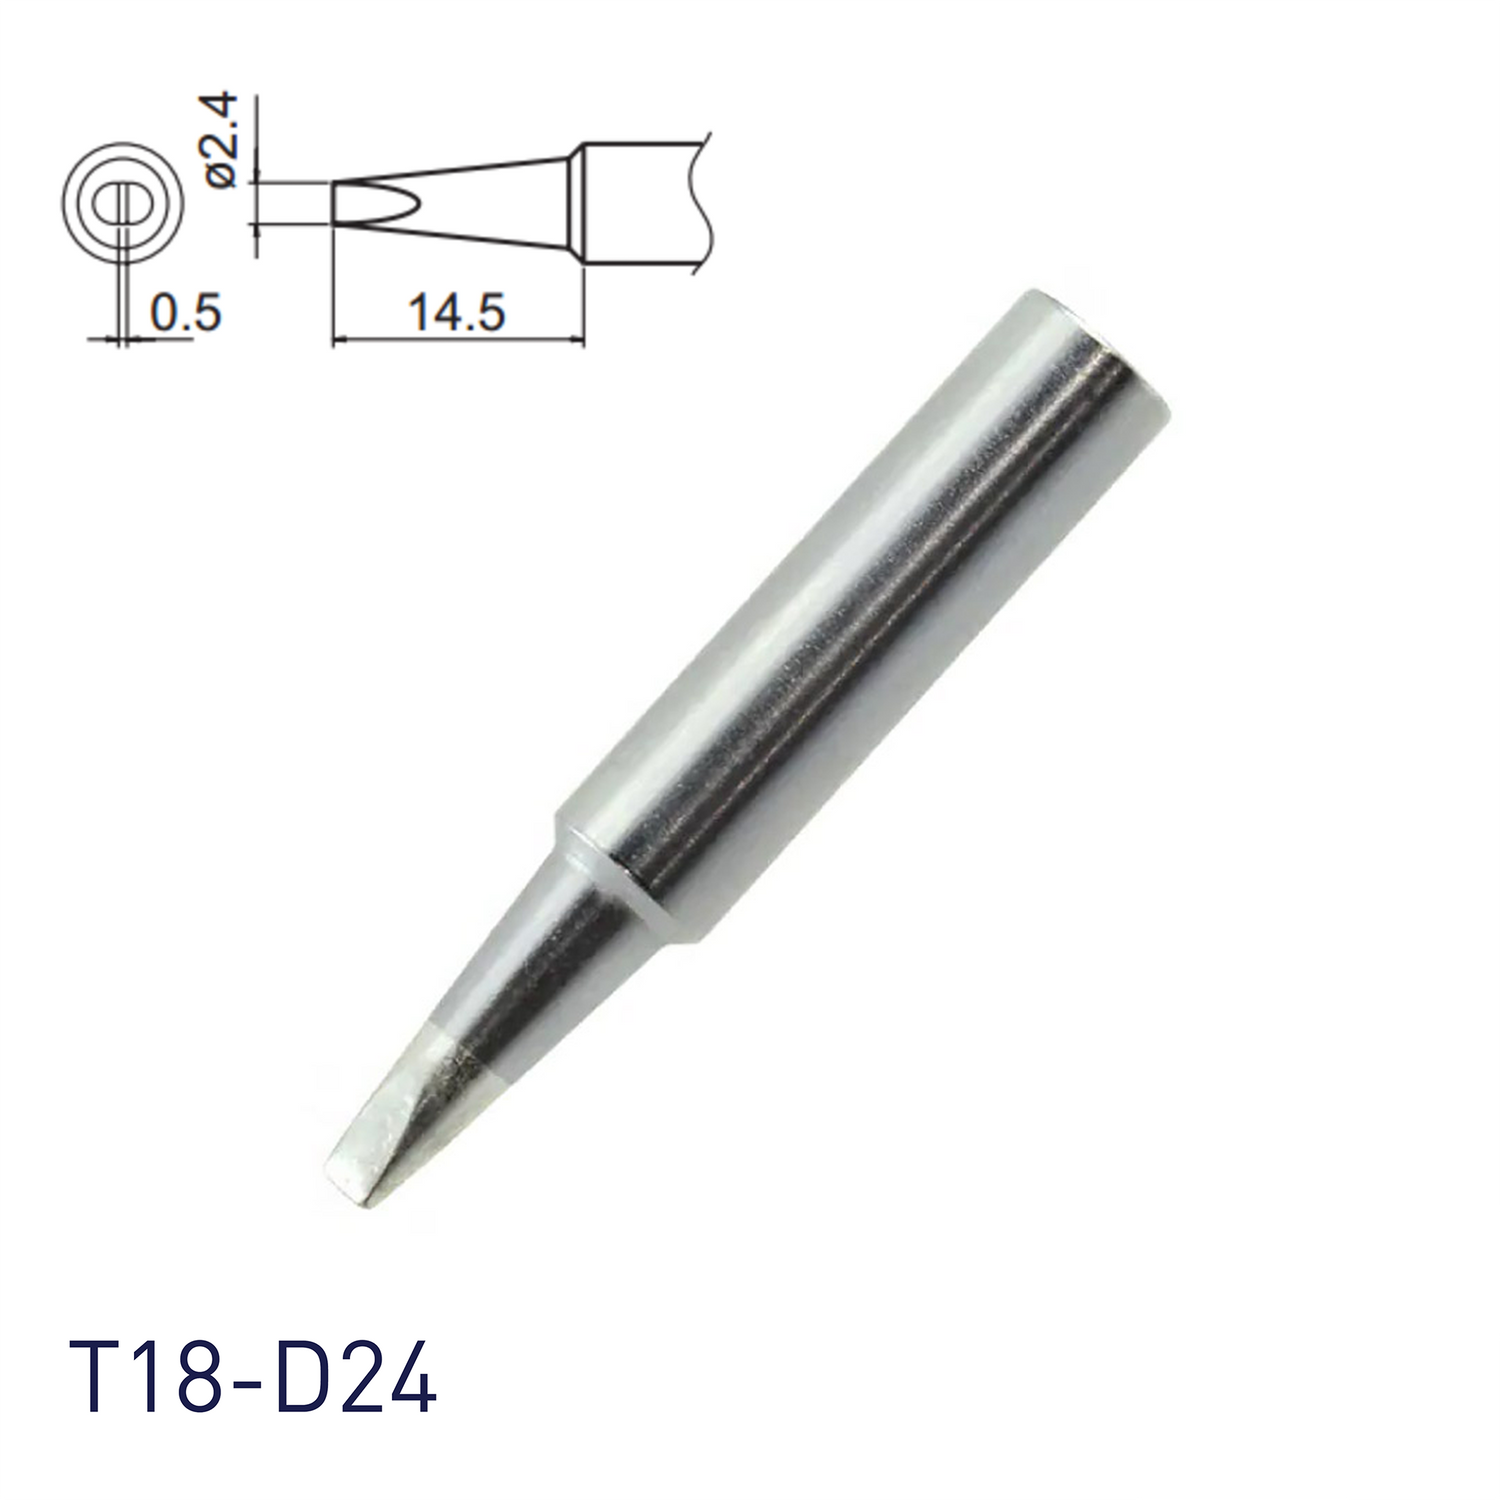 Hakko soldering iron tip T18-D24 for soldering station FX888, FX888D, FX889, FR701, FR702, FX600 & soldering iron FX8801, FX600